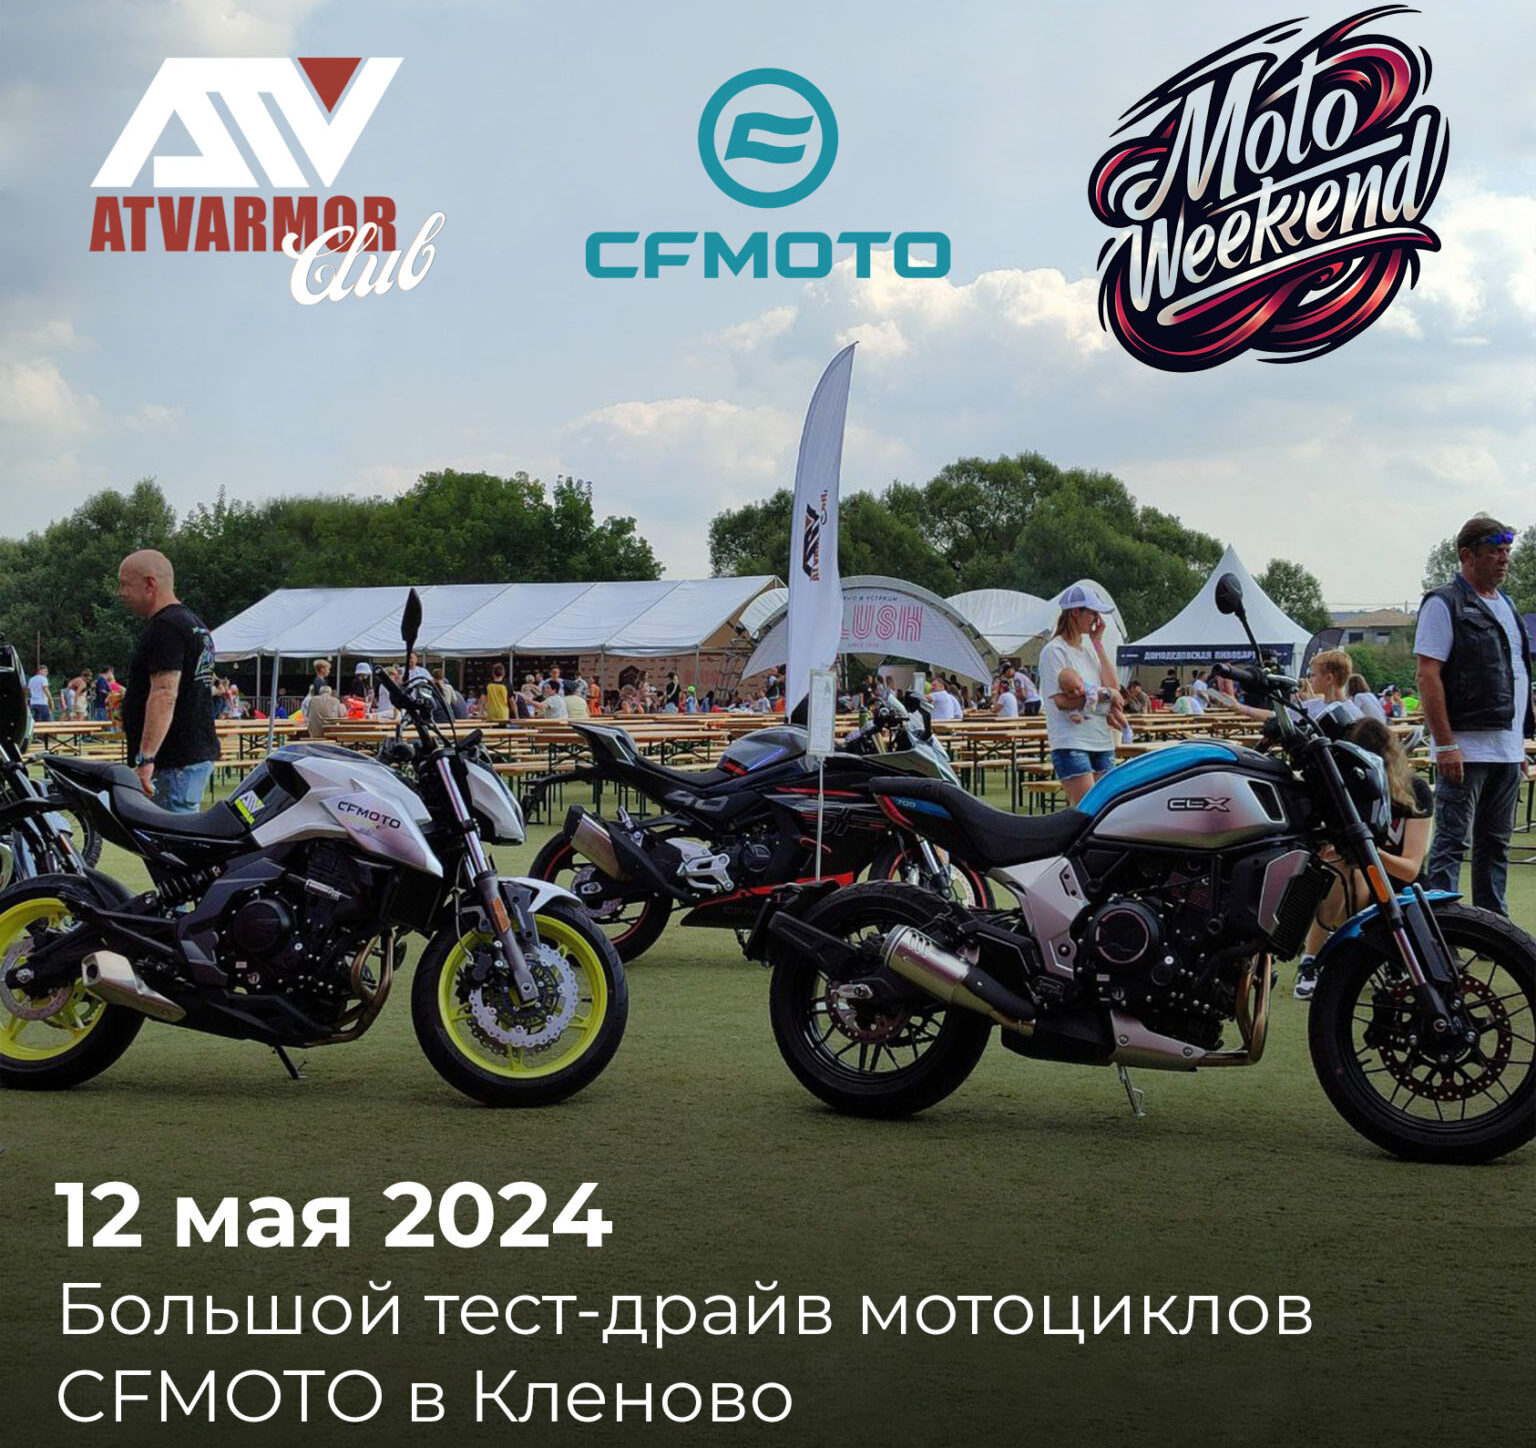 Приглашаем на бесплатный тест-драйв мотоциклов CFMOTO 12 мая